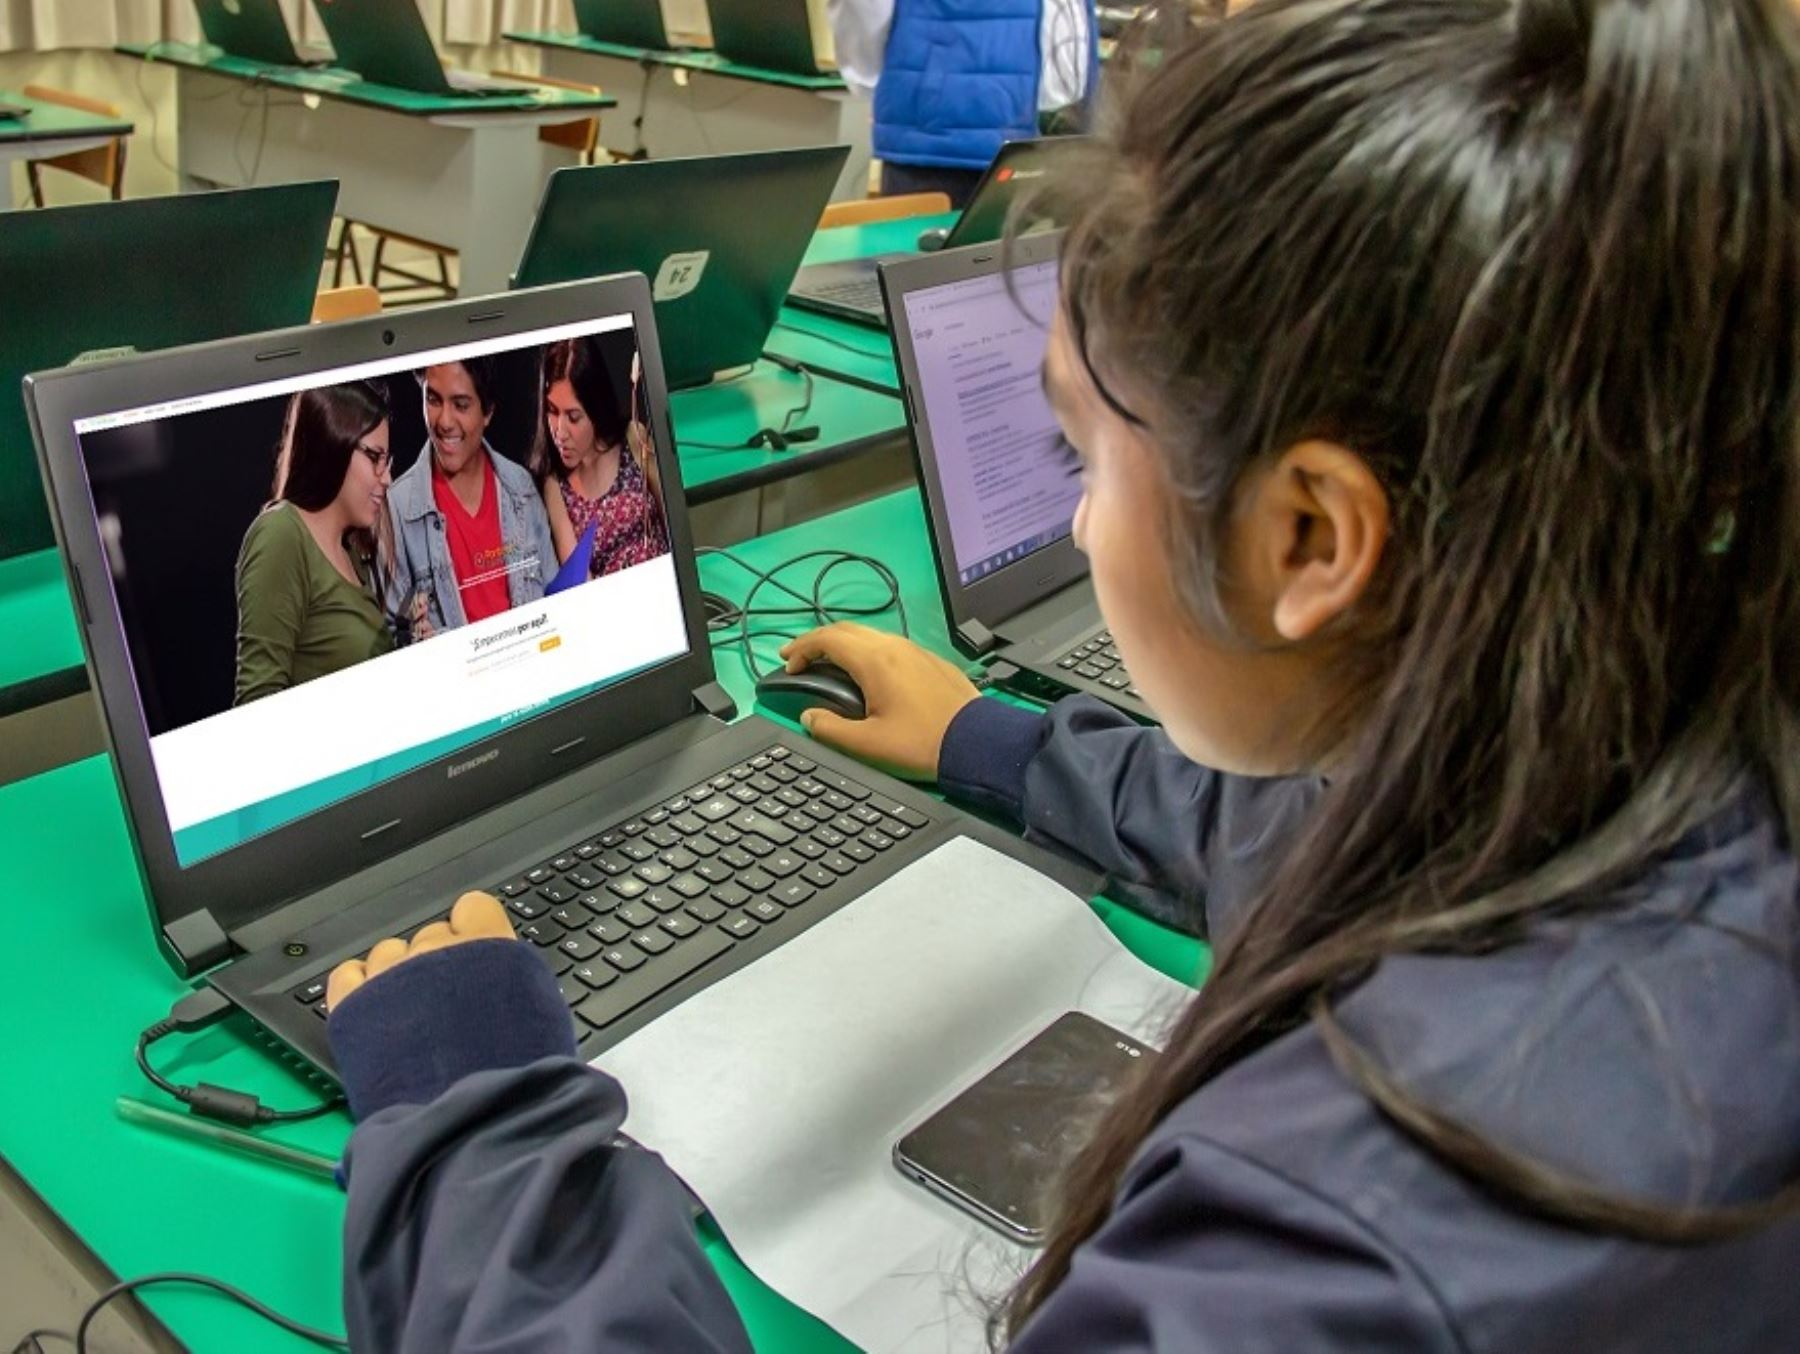 minedu licencia a único instituto peruano 100% digital: ¿qué carreras y cursos ofrece?